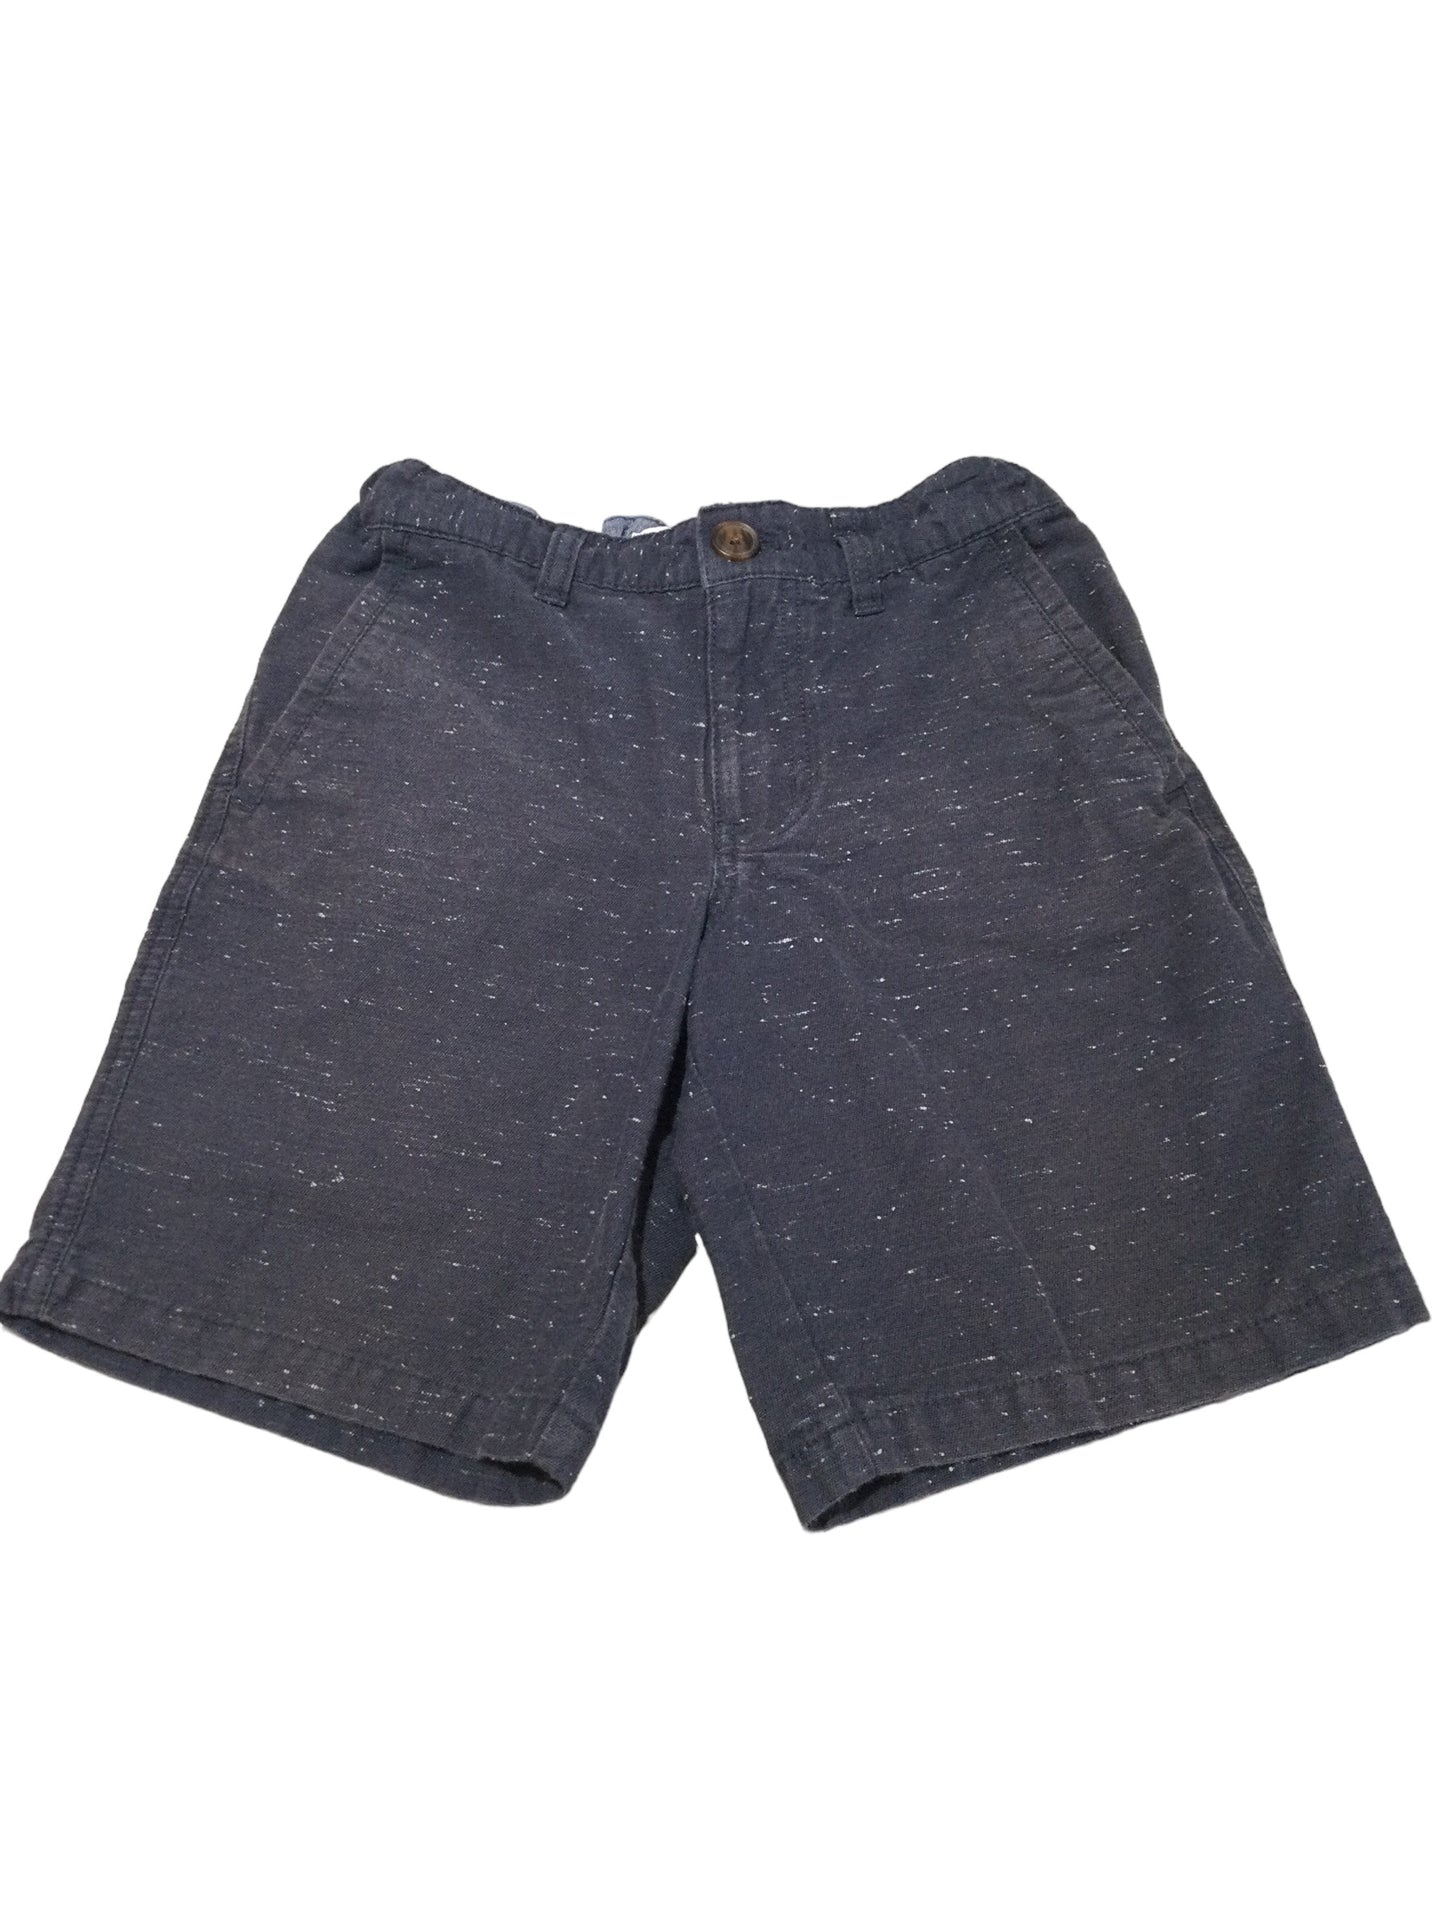 Blue Shorts, size 10